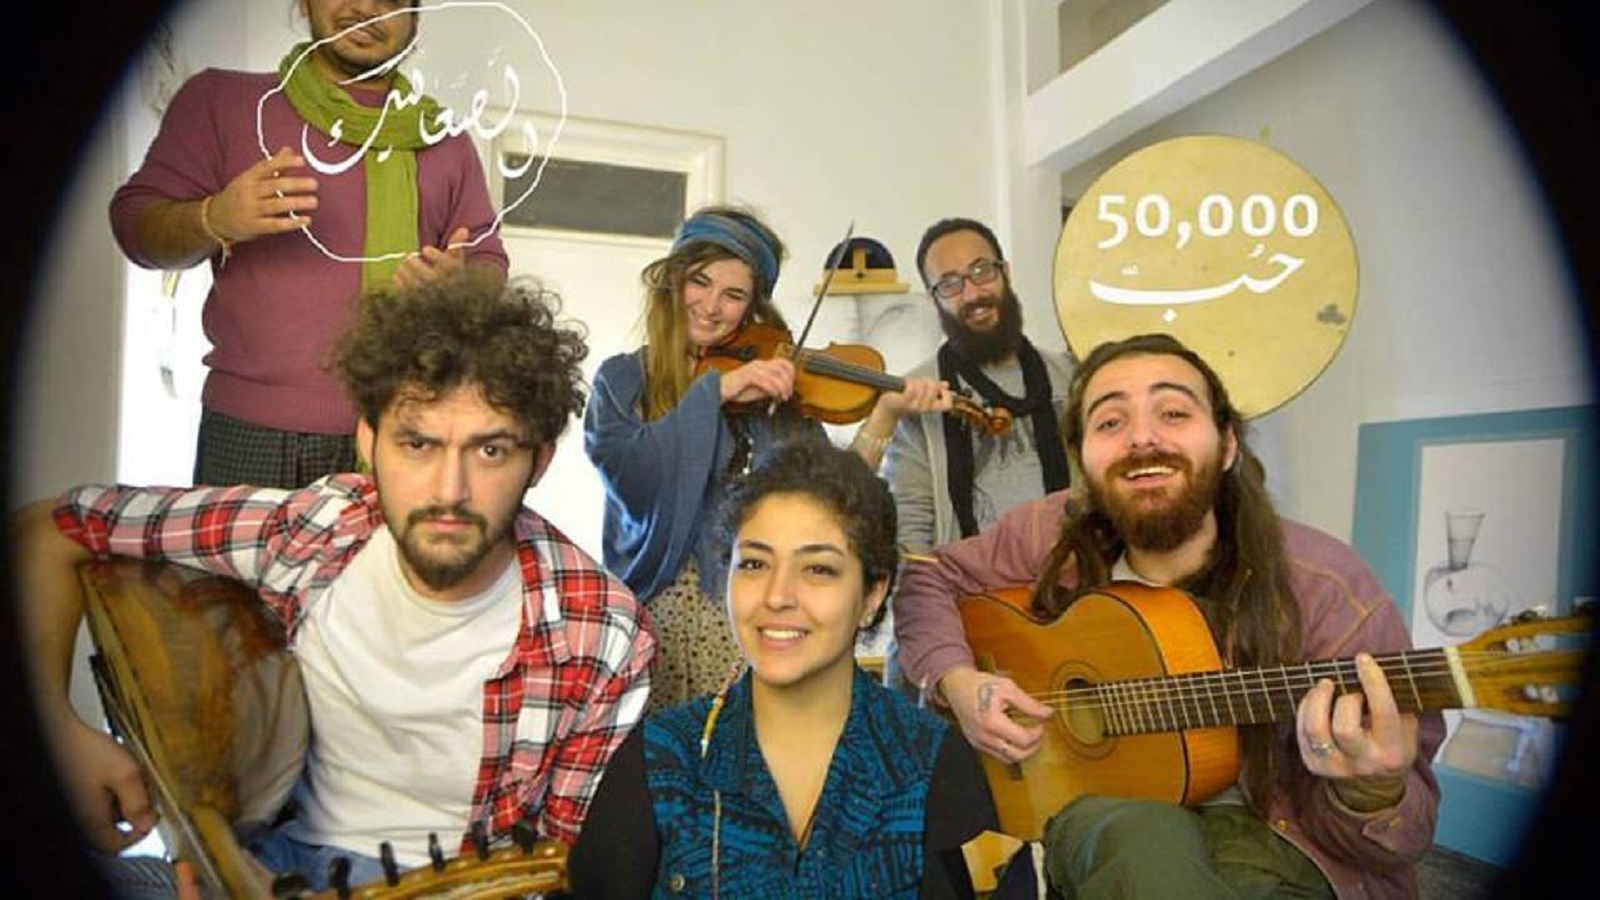 "الصعاليك": بيروت تفتح أماكنها لموسيقى شباب سوريين..رغم كل شيء